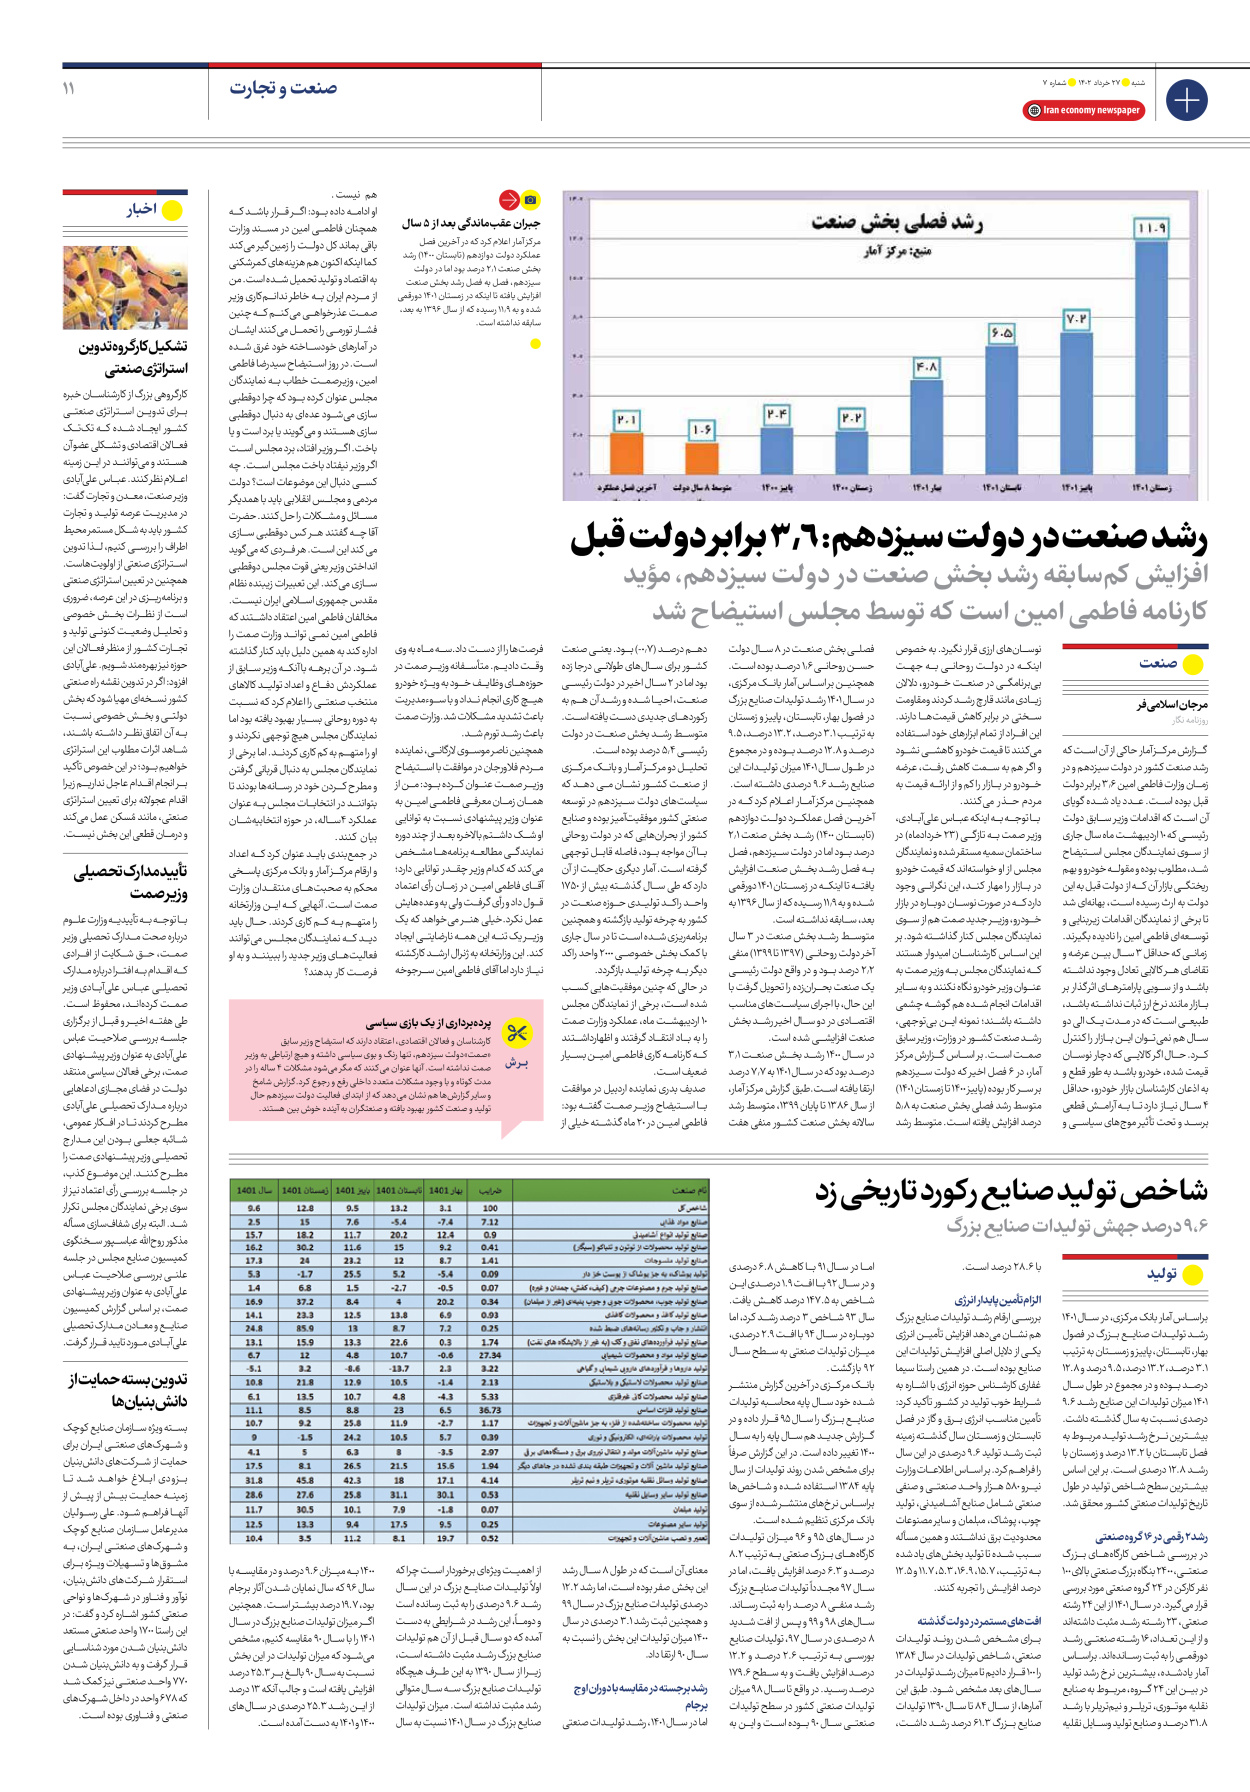 روزنامه ایران اقتصادی - شماره هفت - ۲۷ خرداد ۱۴۰۲ - صفحه ۱۱